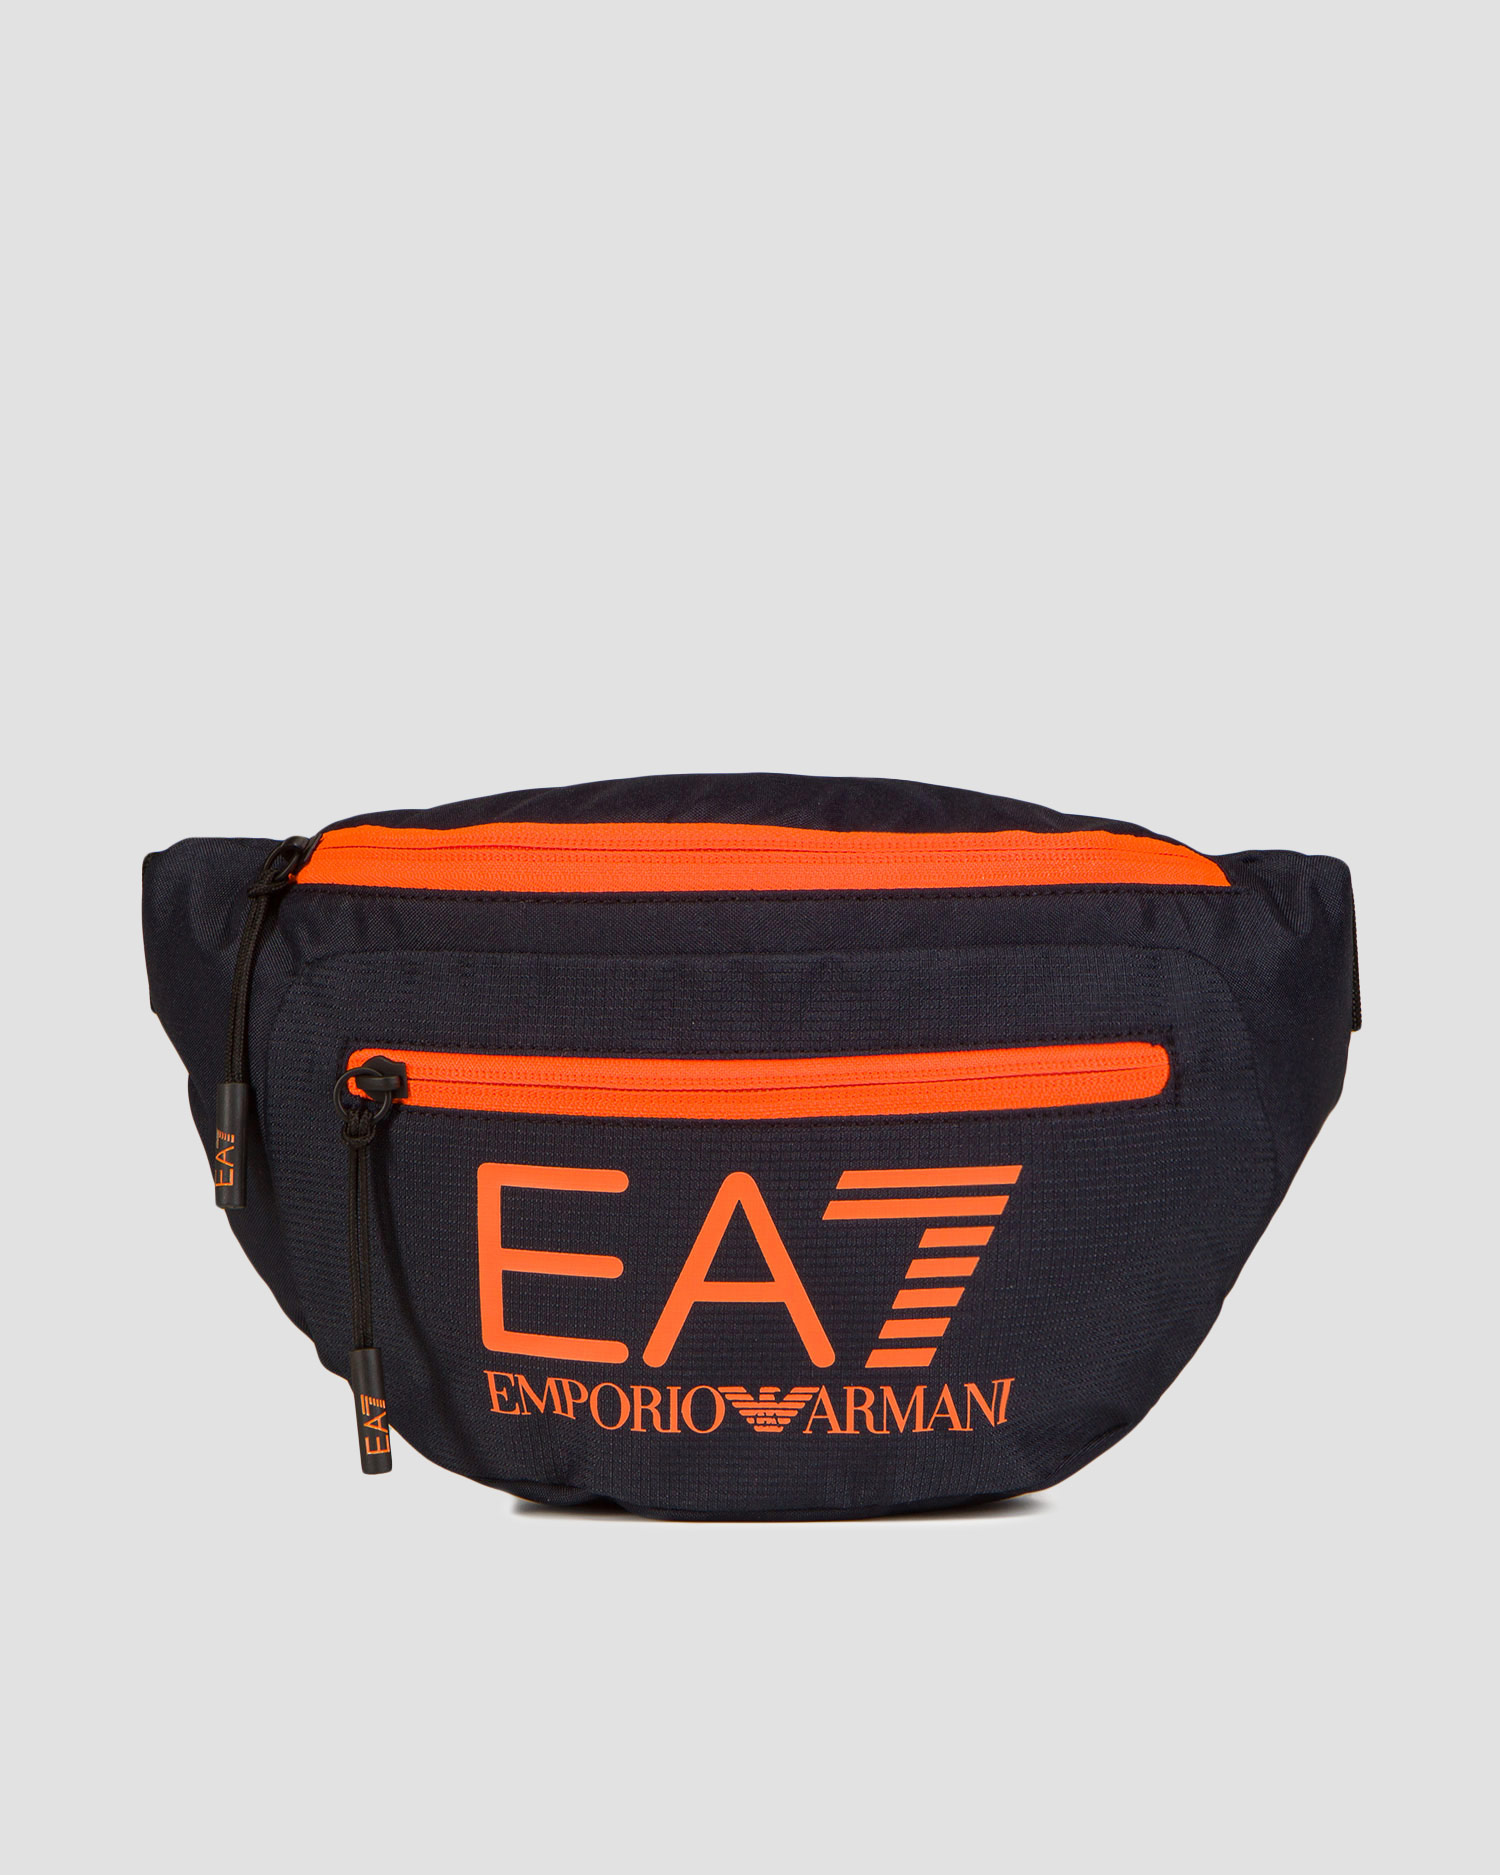 EA7 EMPORIO ARMANI bum bag 275979.CC980-9239 | S'portofino